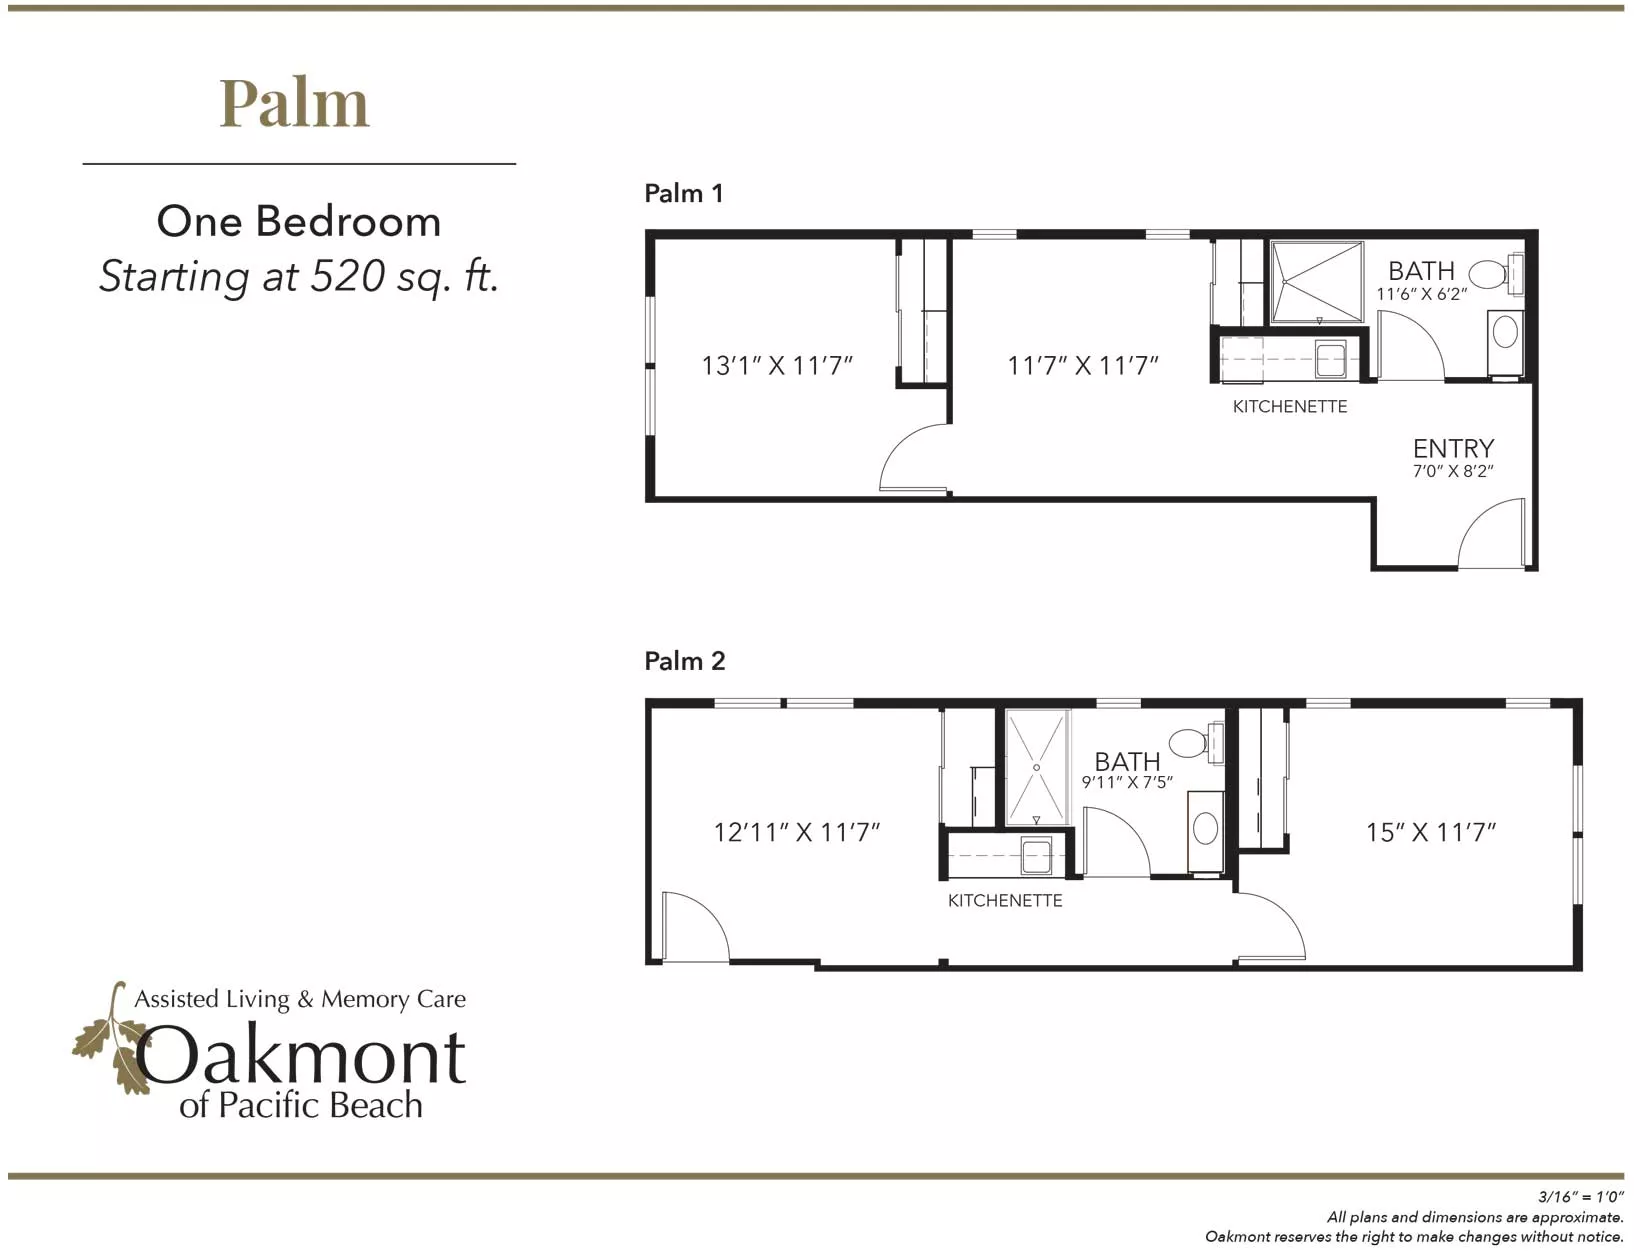 Palm 1 one bedroom floor plan